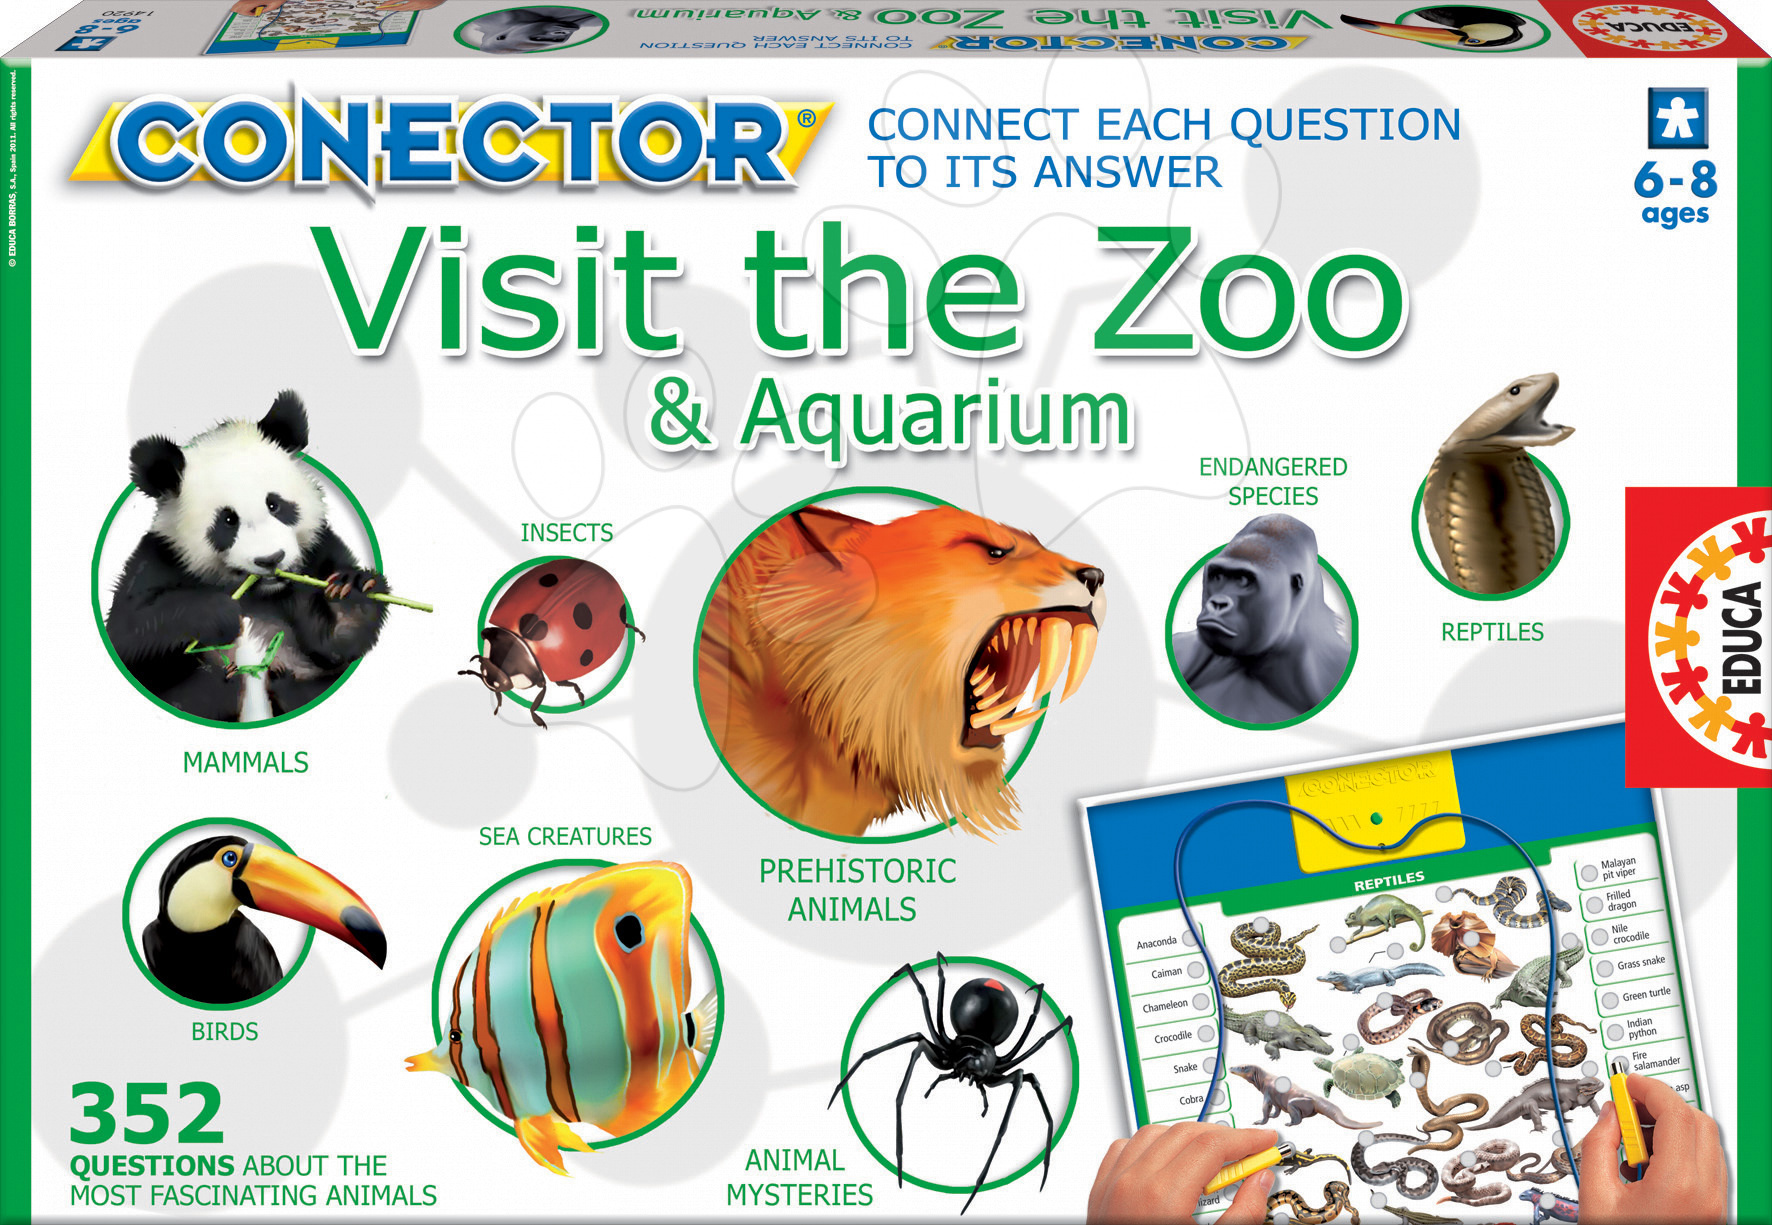 Cudzojazyčné spoločenské hry - Náučná hra Conector Visit the ZOO & Aquarium Educa 352 otázok v angličtine od 6 rokov